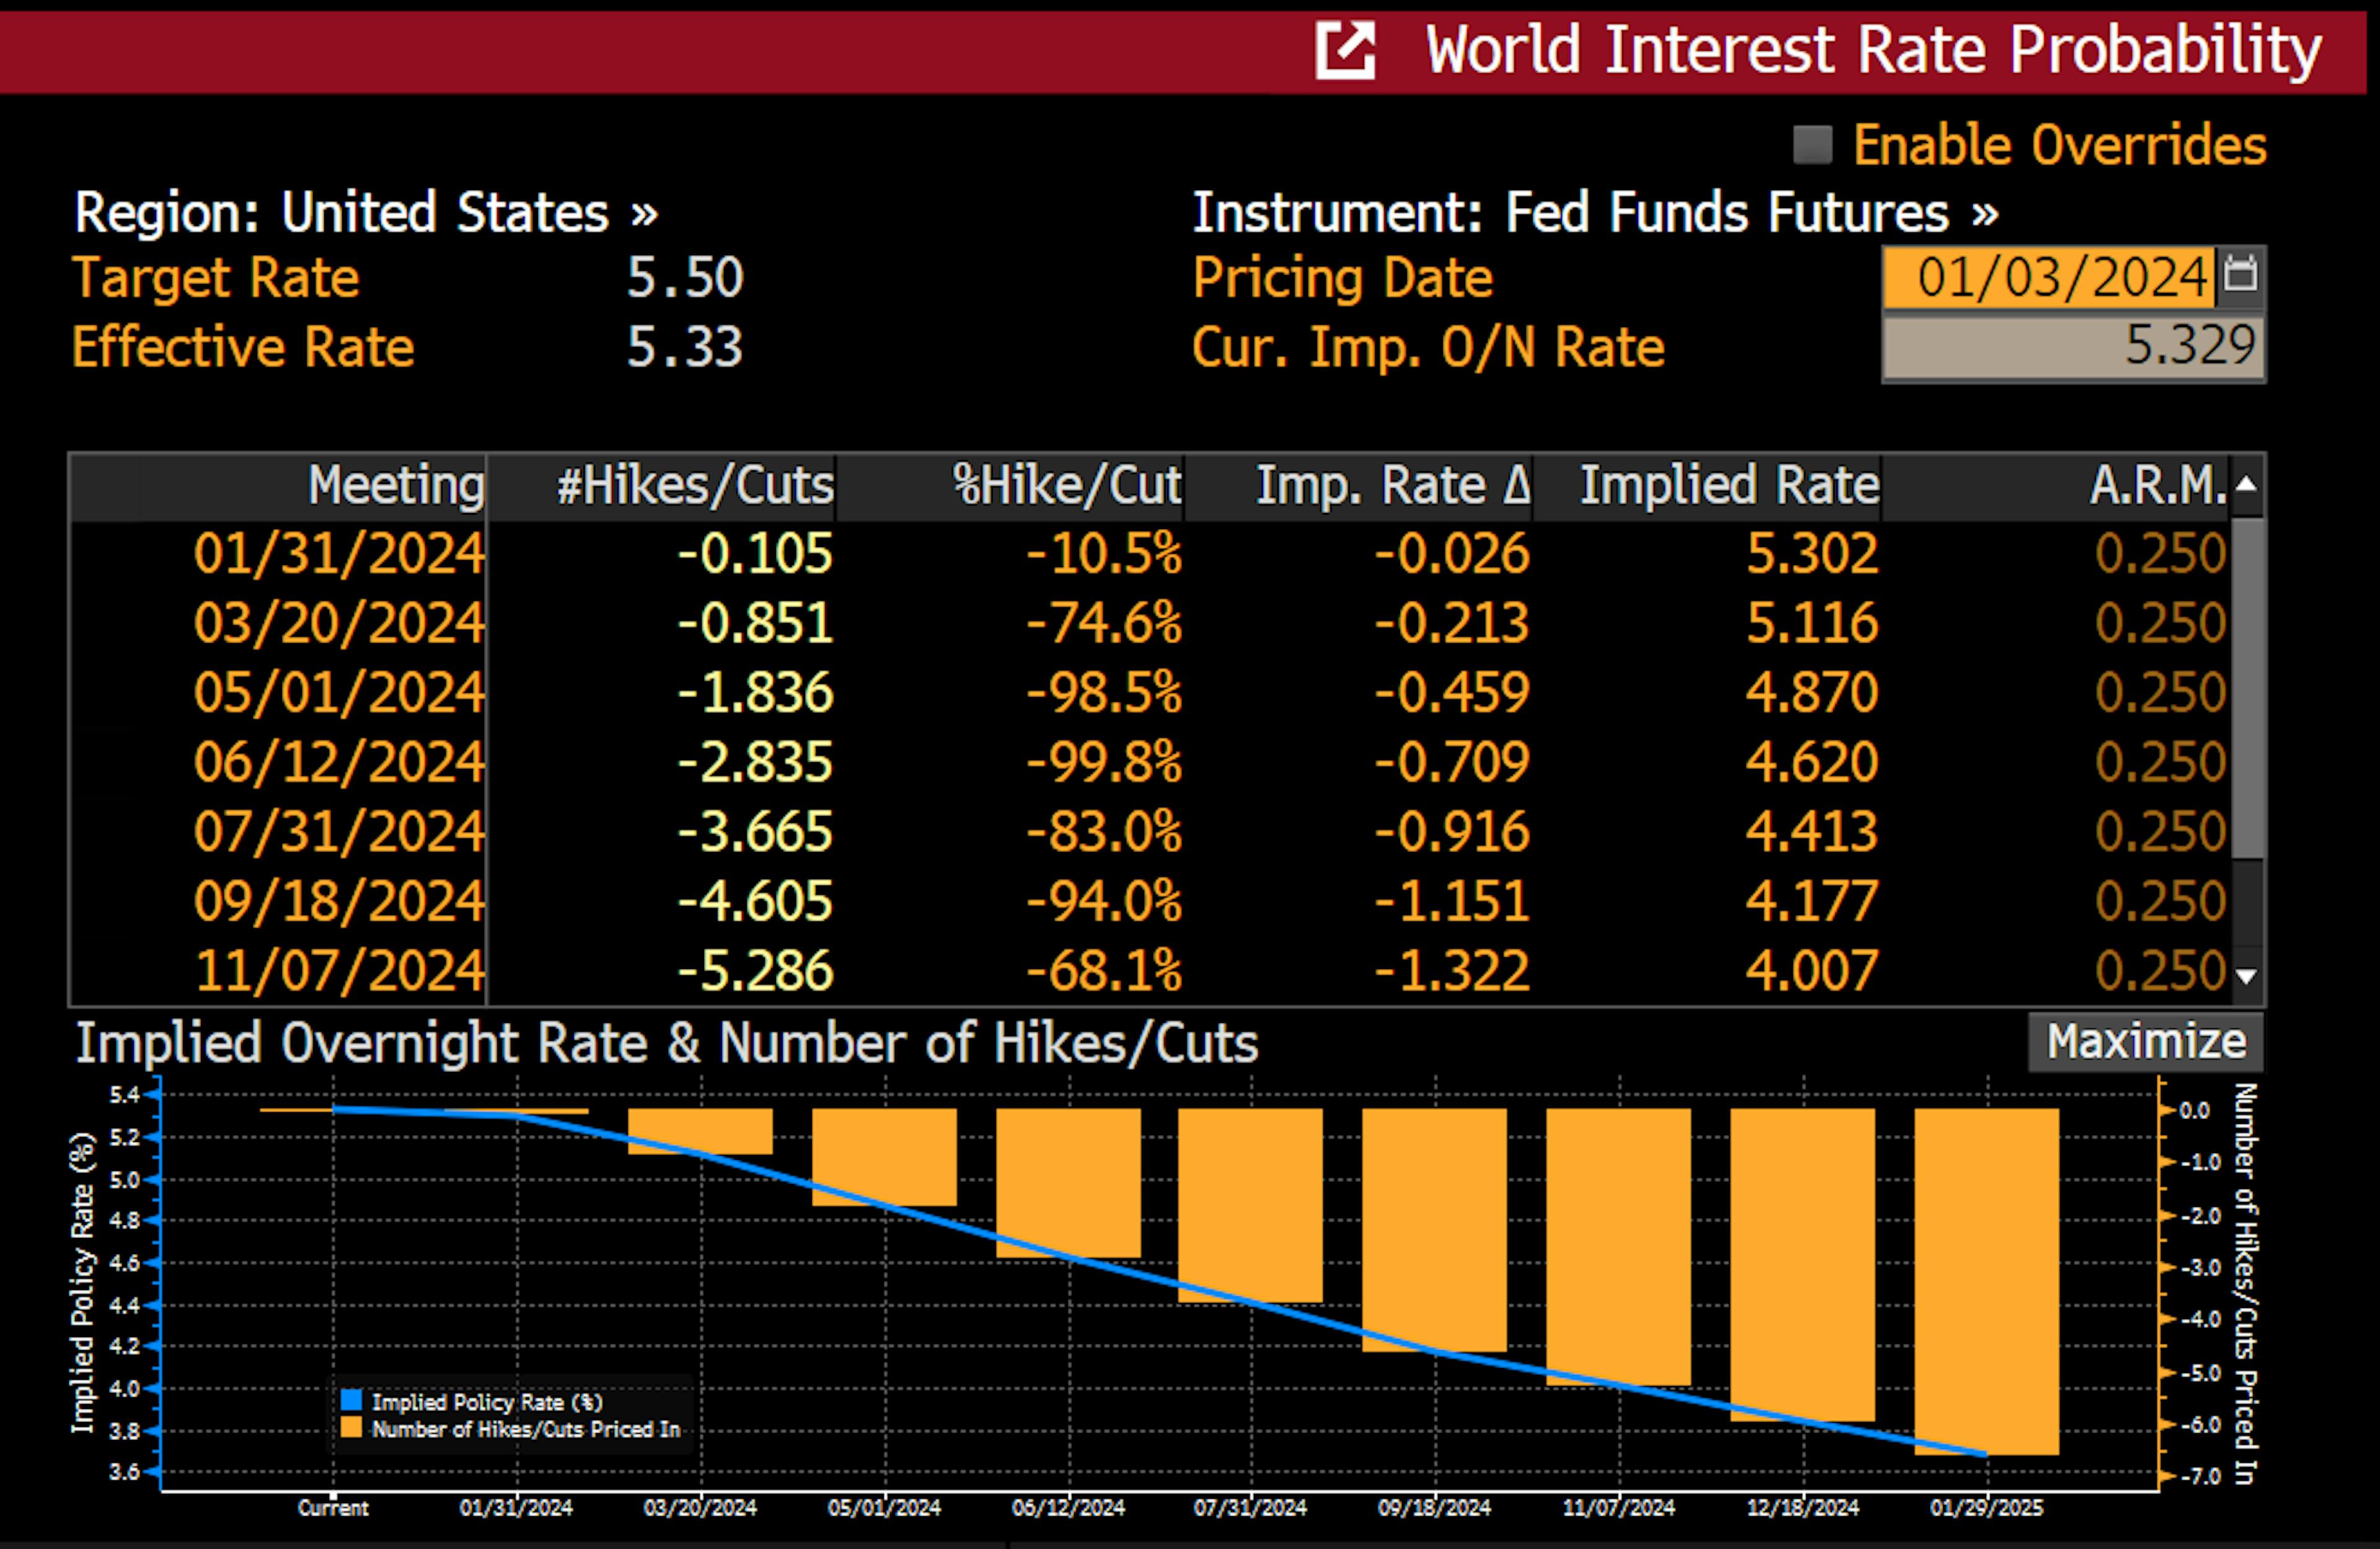 Esta é uma tabela de probabilidade implícita de aumento das taxas nos Futuros do Fed Fund em futuras reuniões do Fed. Como você pode ver, a partir de 3 de janeiro, o mercado prevê 75% de chance de um corte de 0,25% nas taxas.